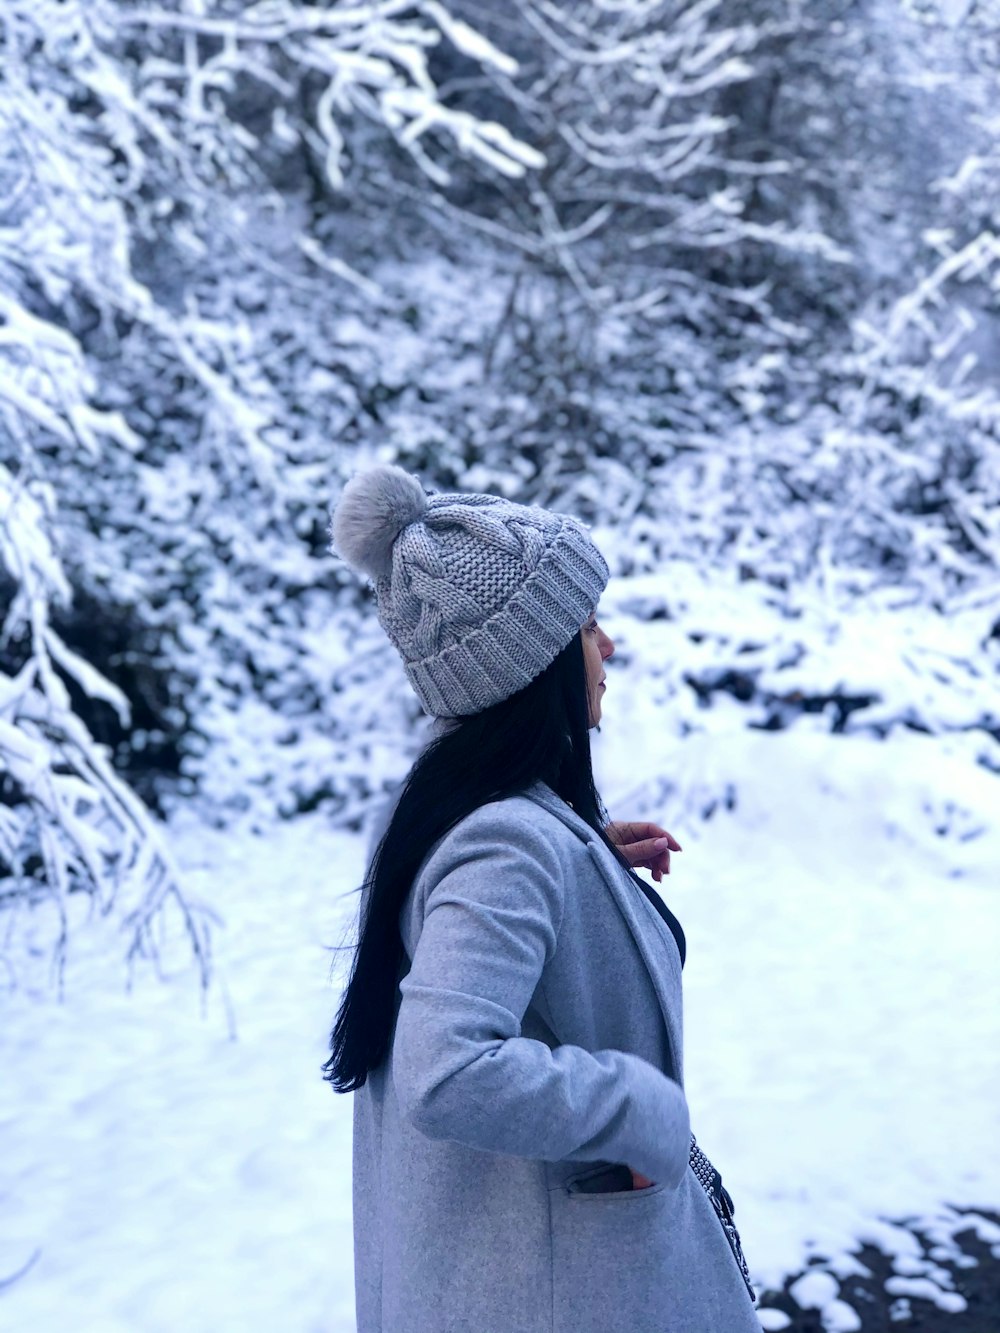 Mujer en la nieve con gorro blanco y jersey de lana azul. Stock Photo